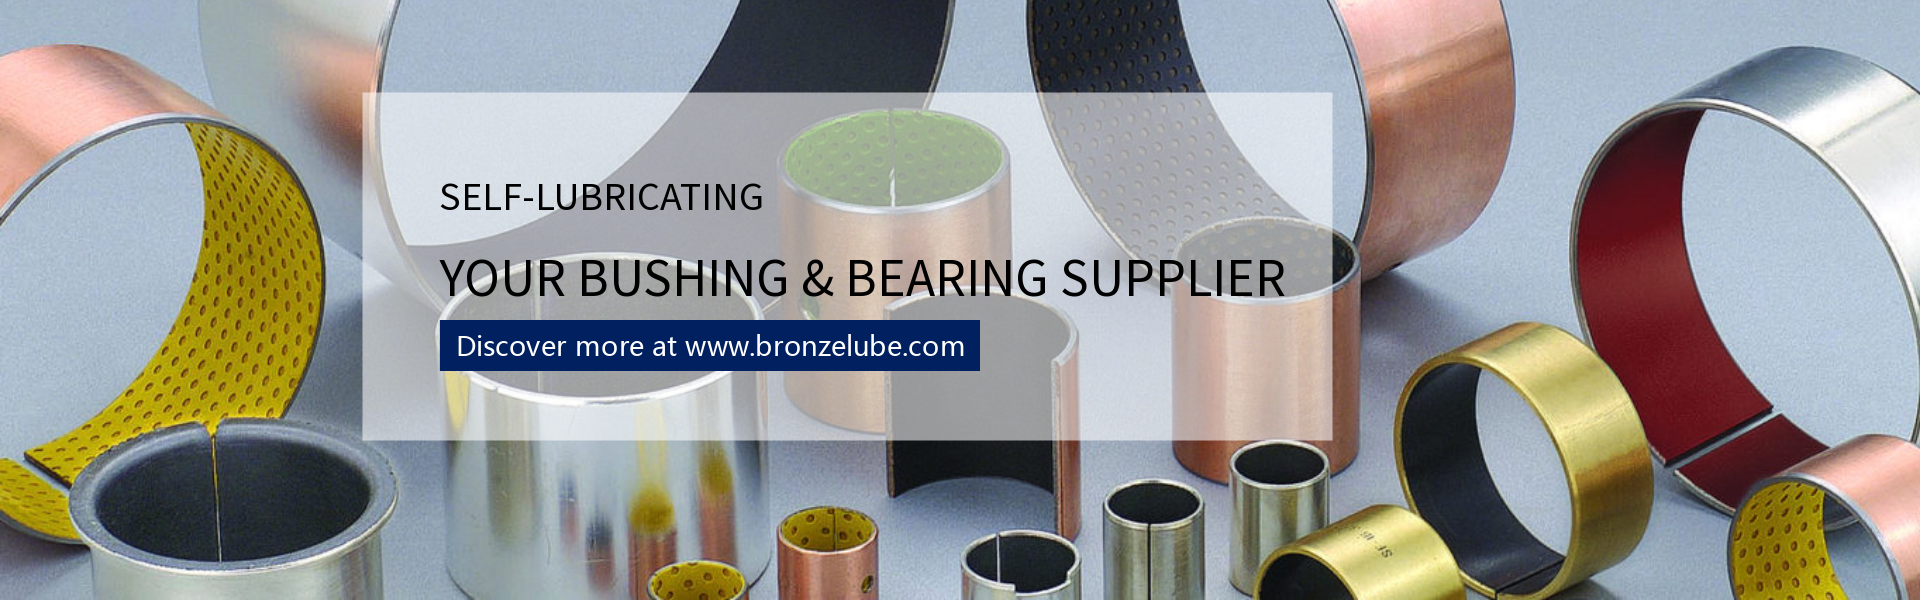 self-lubricating bushings & bearings supplier